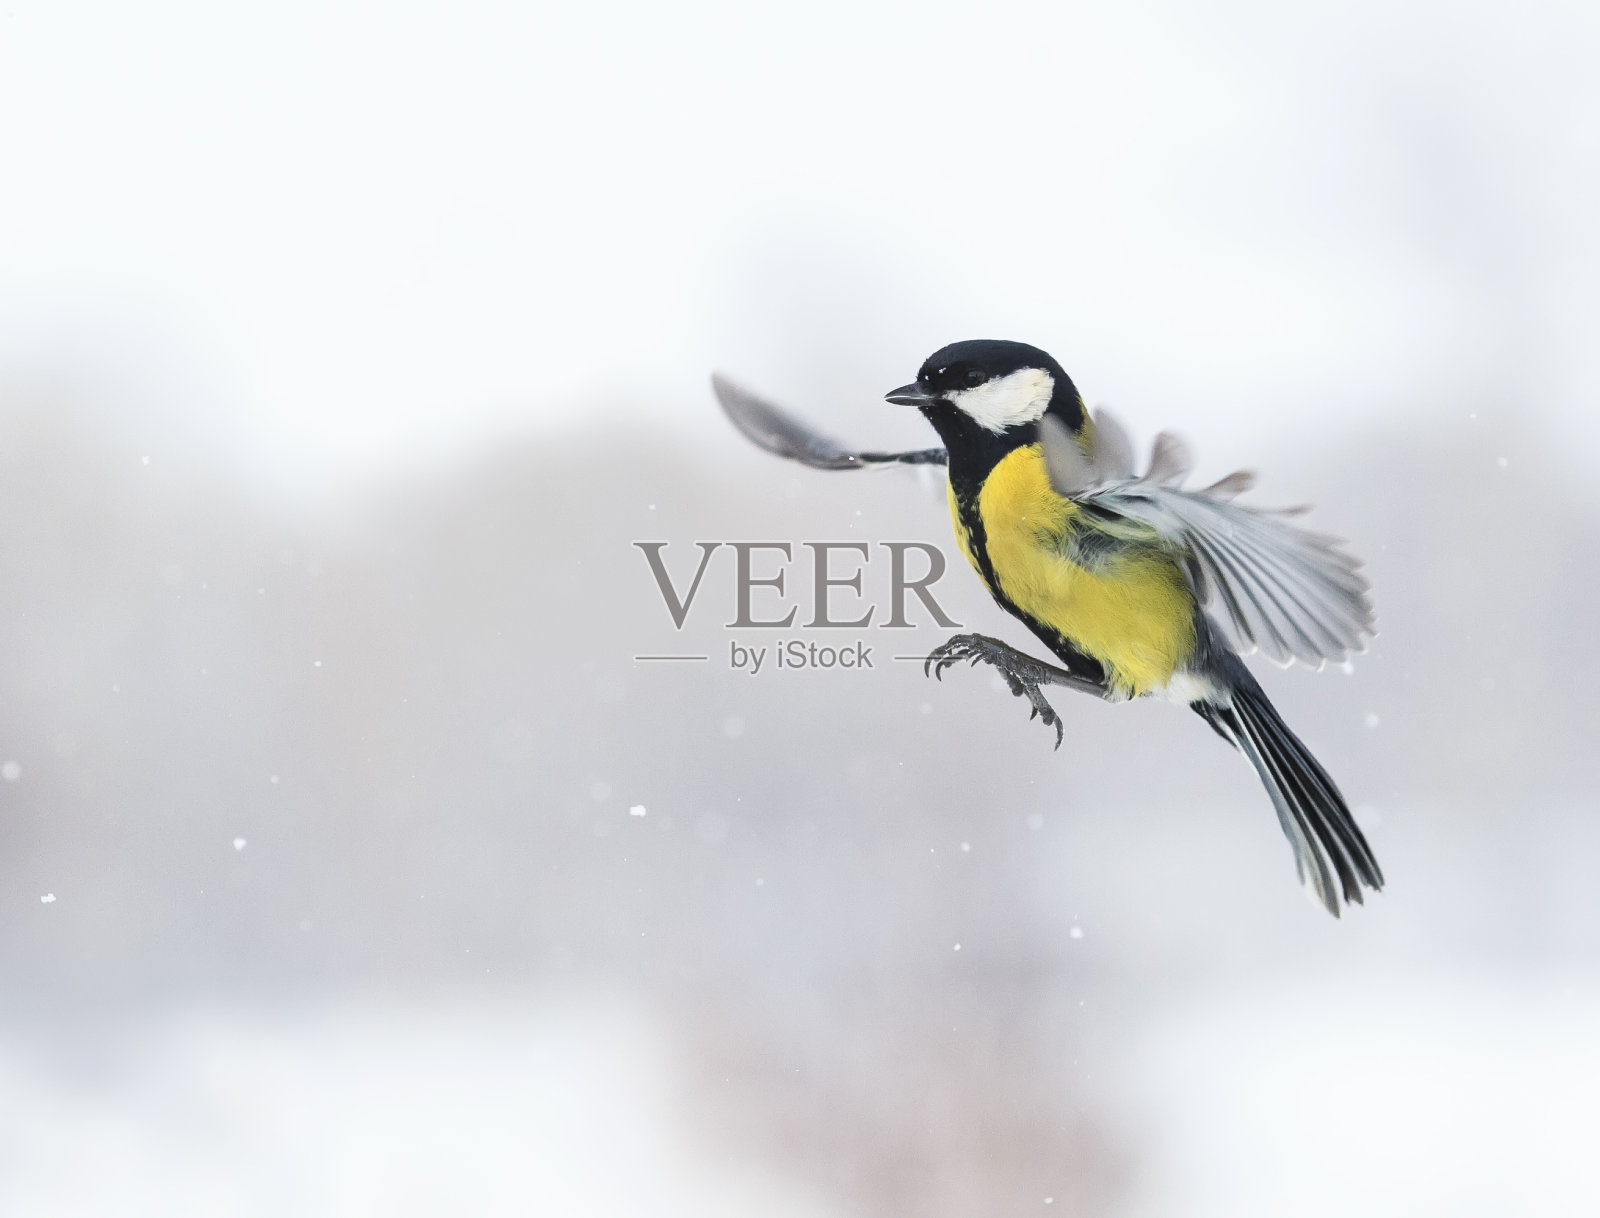 可爱的小鸟在雪中张开翅膀飞翔照片摄影图片